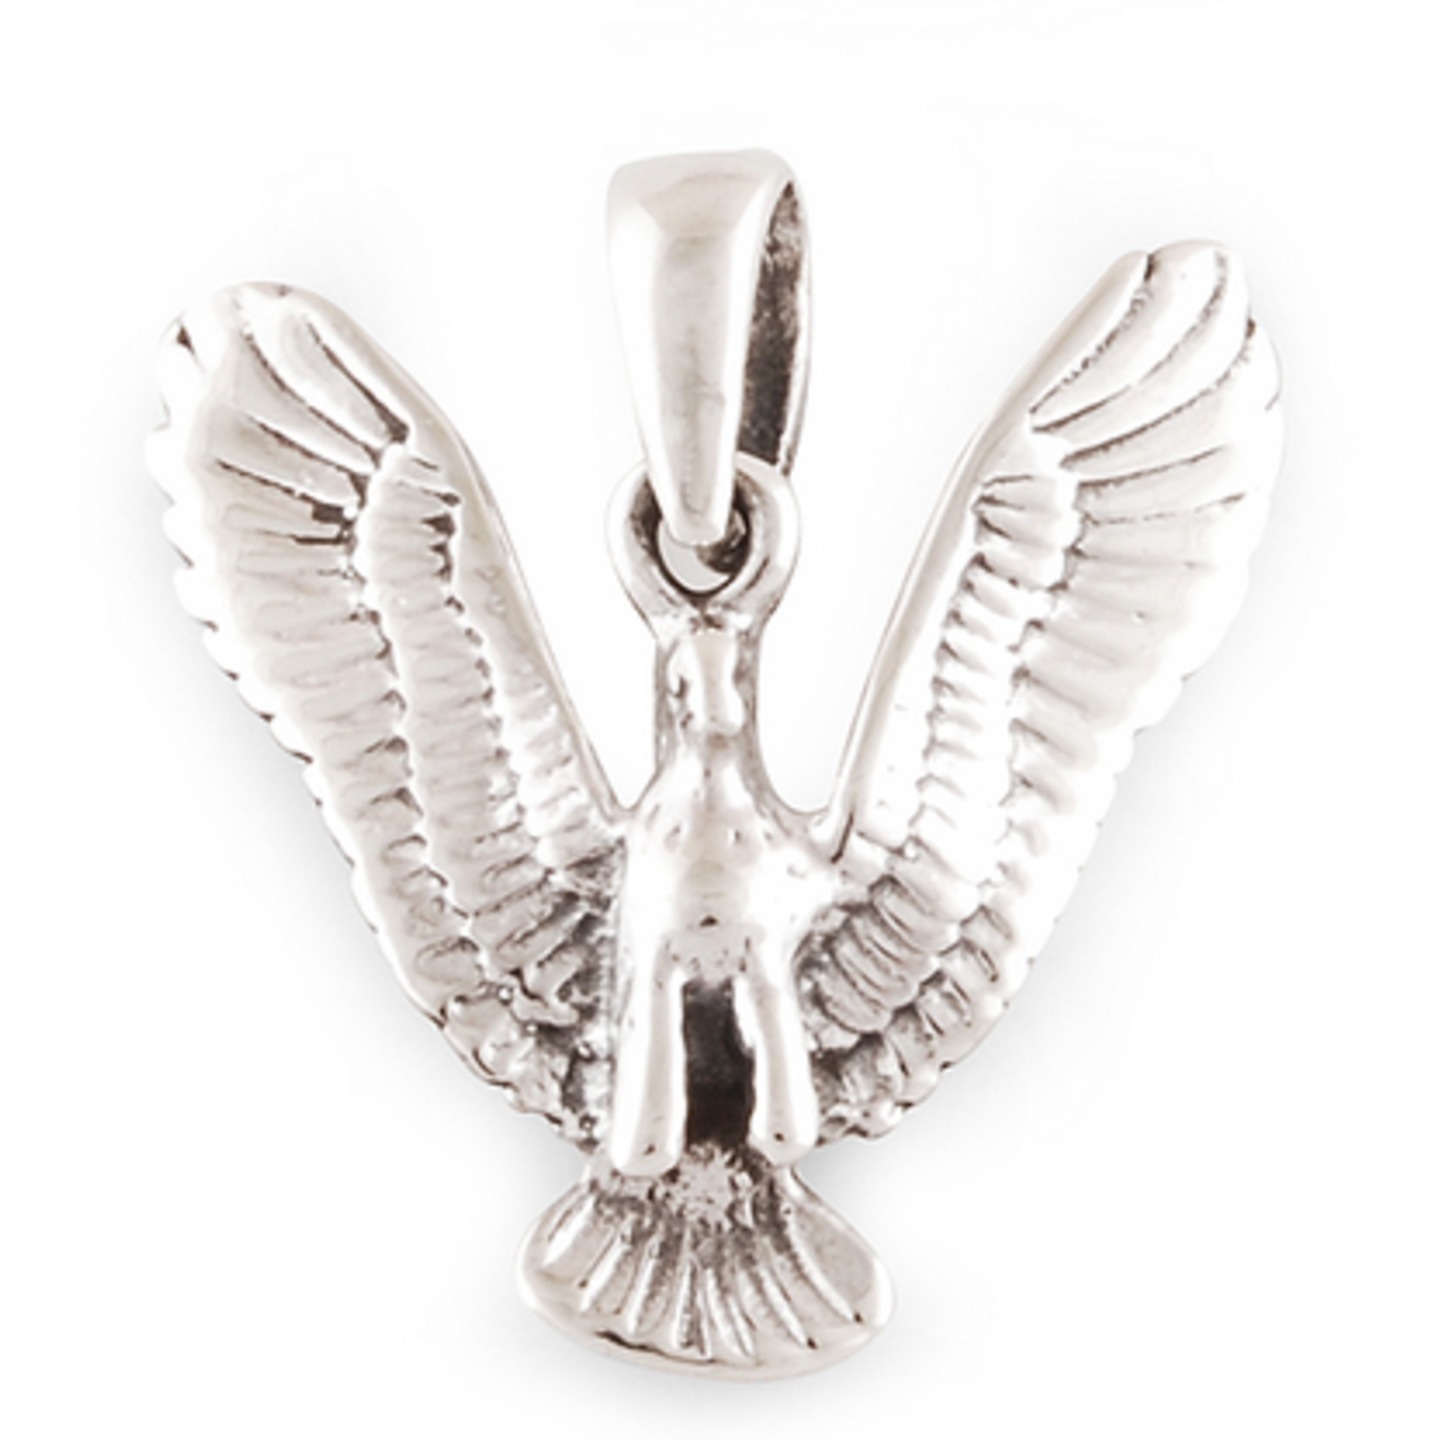 The Eagle Pendant